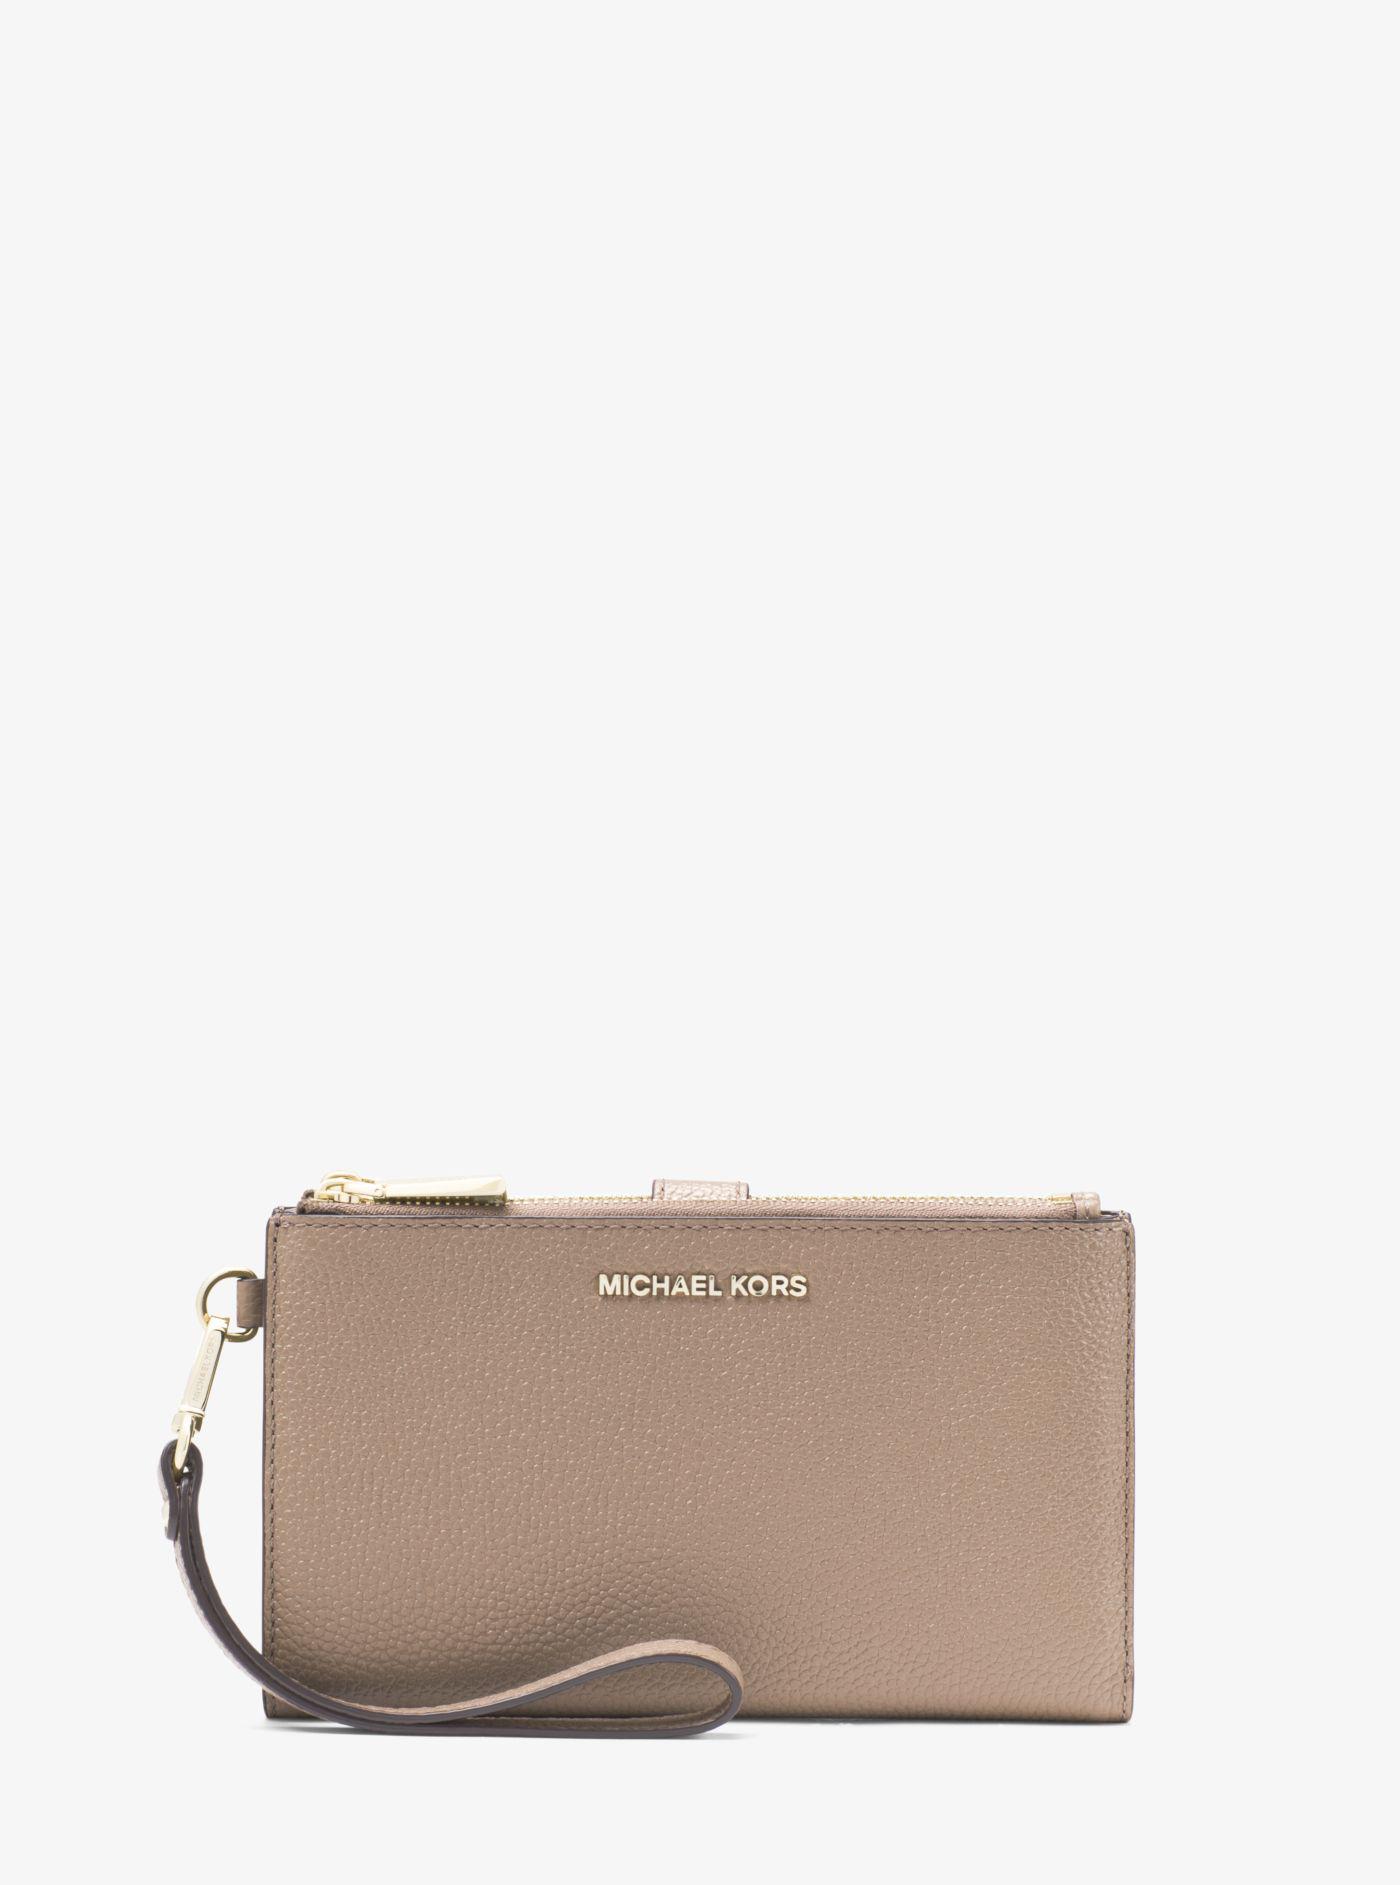 adele embellished leather smartphone wallet